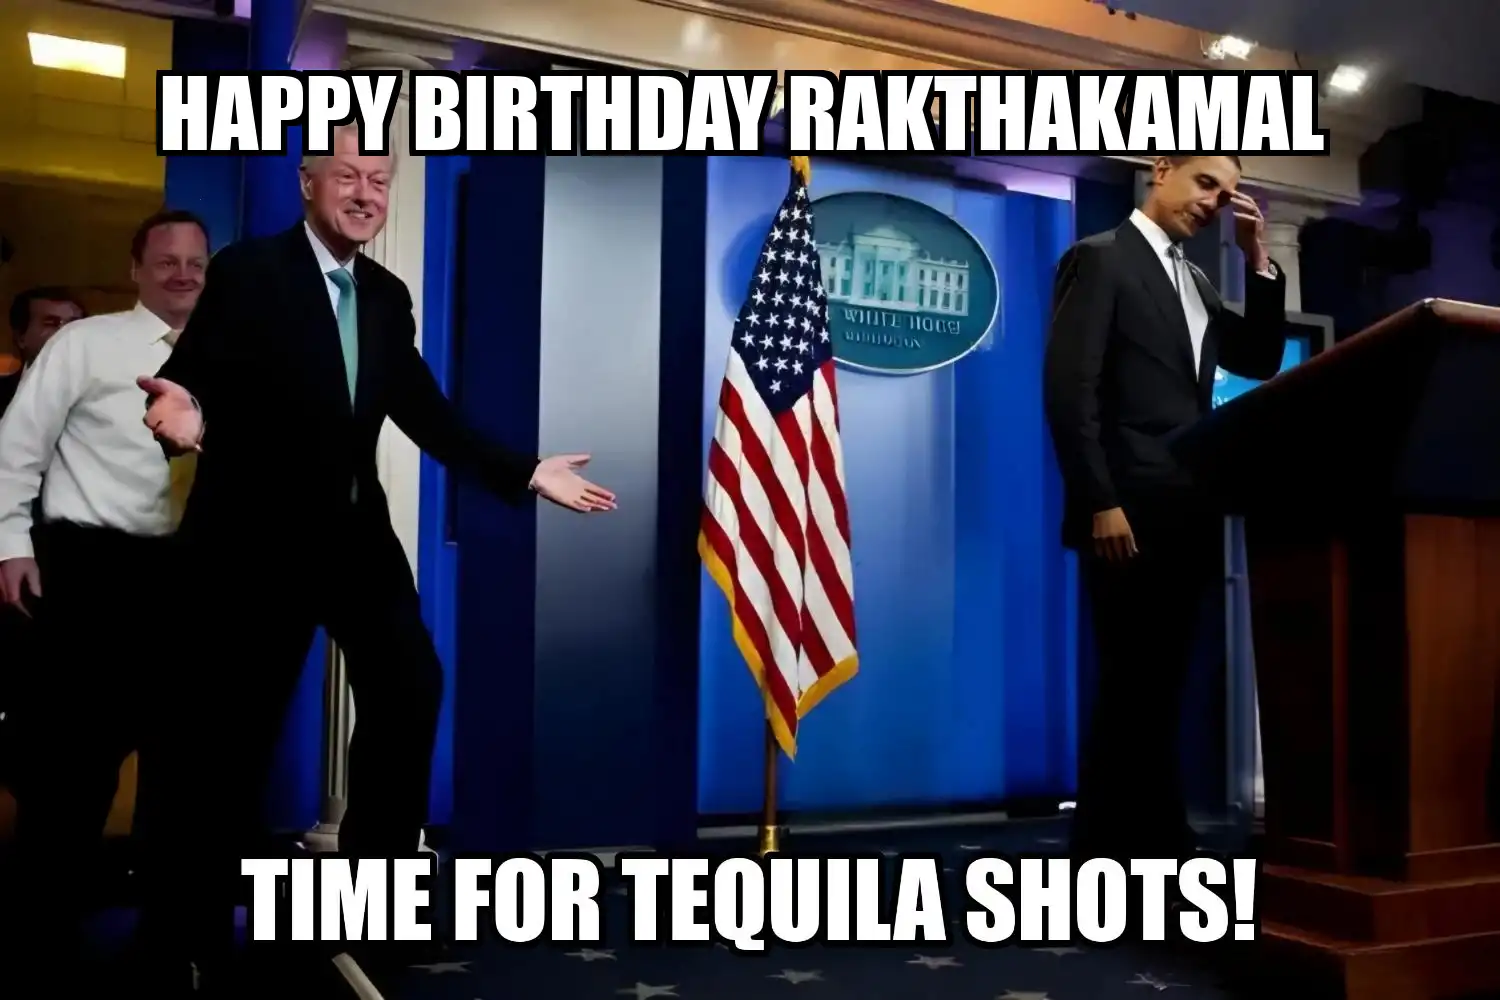 Happy Birthday Rakthakamal Time For Tequila Shots Memes